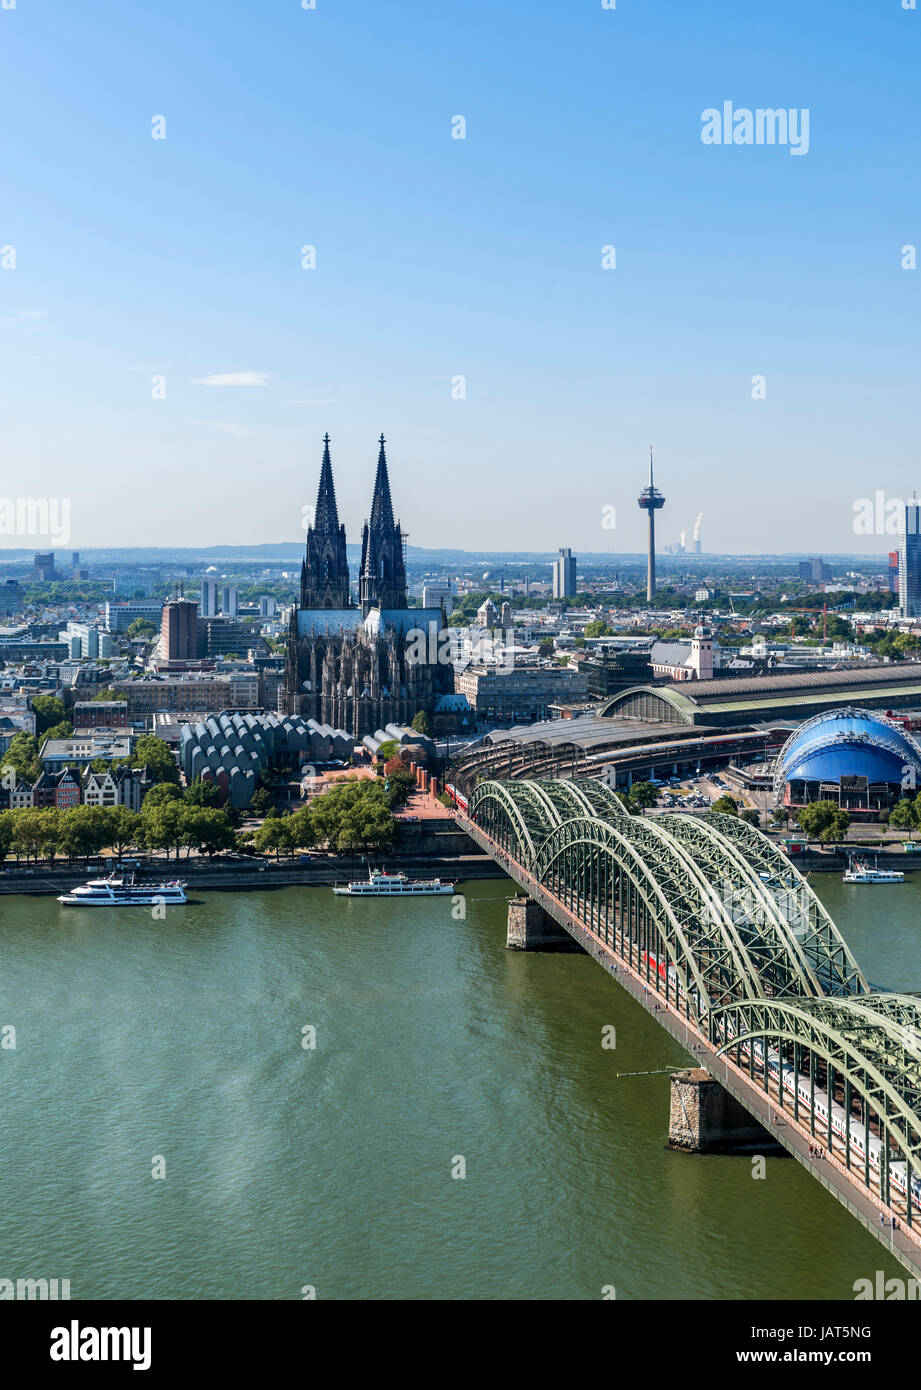 La cattedrale di Colonia. Vista sul fiume Reno alla Cattedrale di Colonia e dalla Stazione Ferroviaria con il ponte di Hohenzollern in primo piano, Colonia Germania Foto Stock